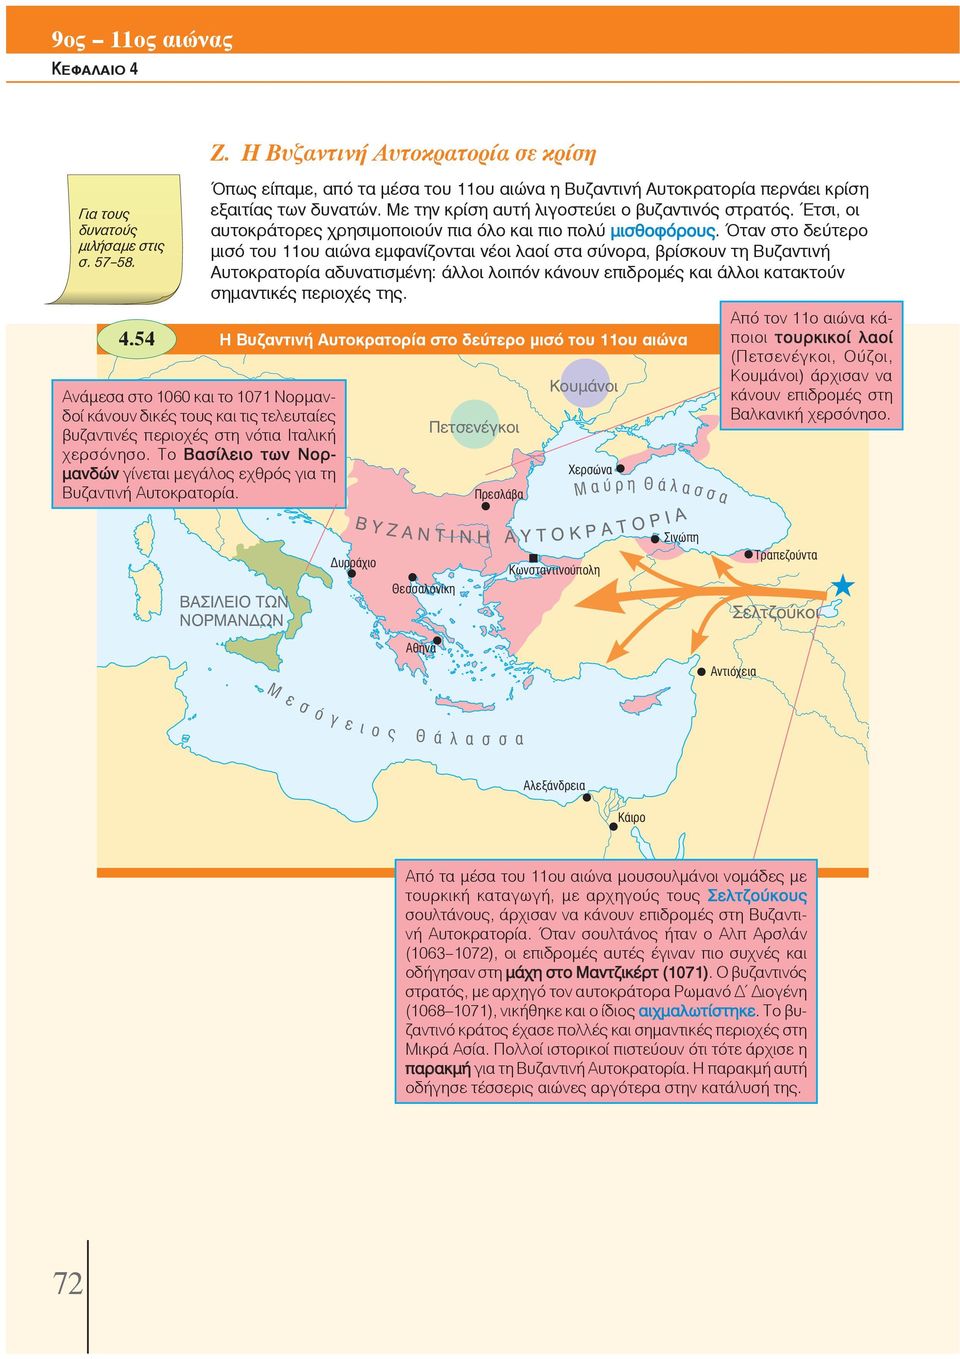 Όταν στο δεύτερο μισό του 11ου αιώνα εμφανίζονται νέοι λαοί στα σύνορα, βρίσκουν τη Βυζαντινή Αυτοκρατορία αδυνατισμένη: άλλοι λοιπόν κάνουν επιδρομές και άλλοι κατακτούν σημαντικές περιοχές της.